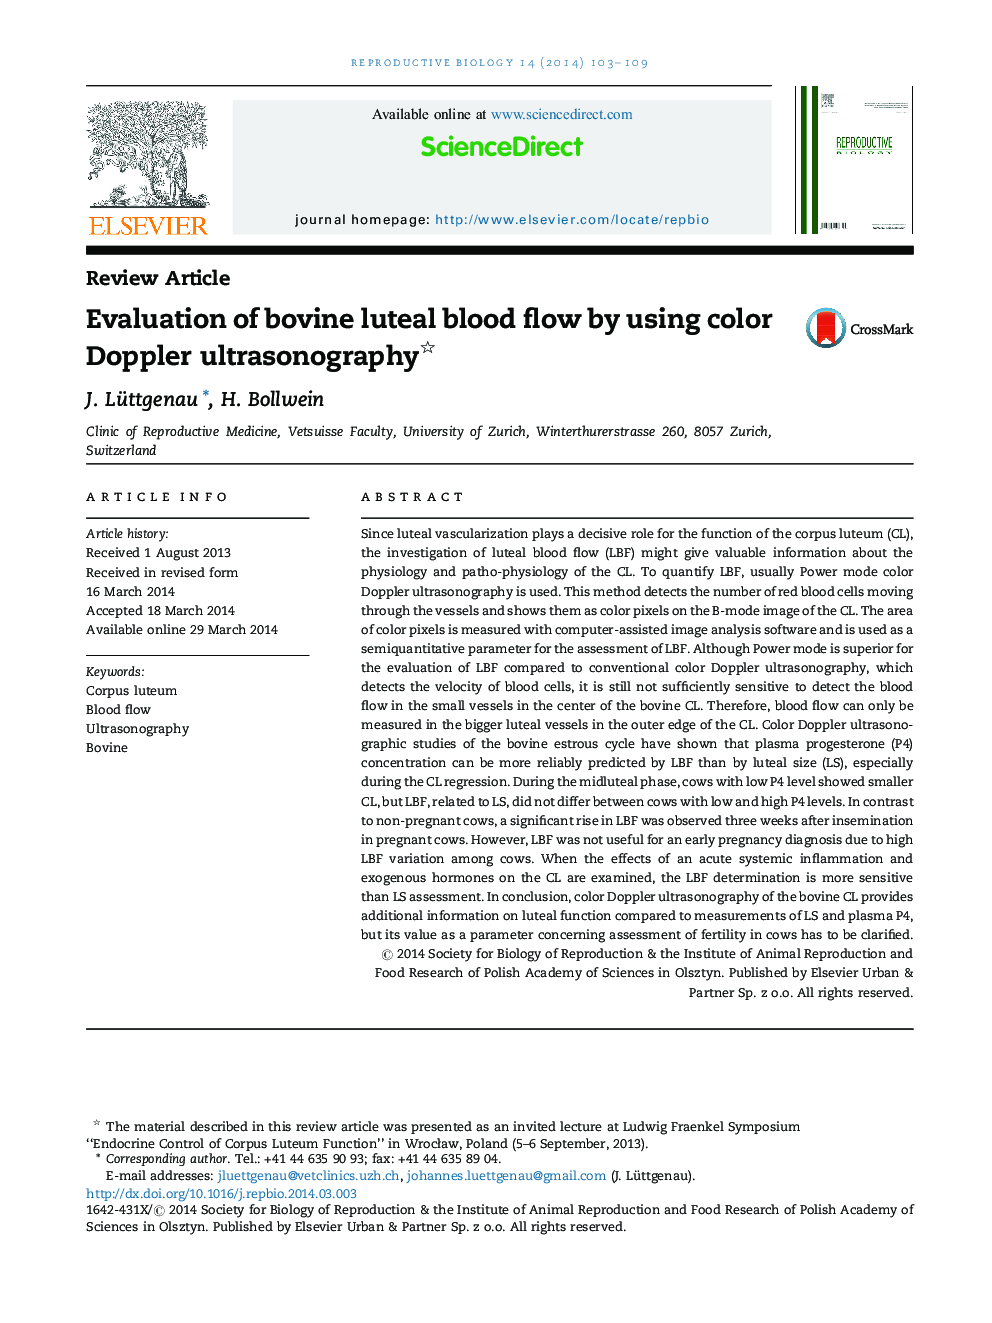 بررسی جریان خون لووتیال گاوی با استفاده از سونوگرافی داپلر رنگی 